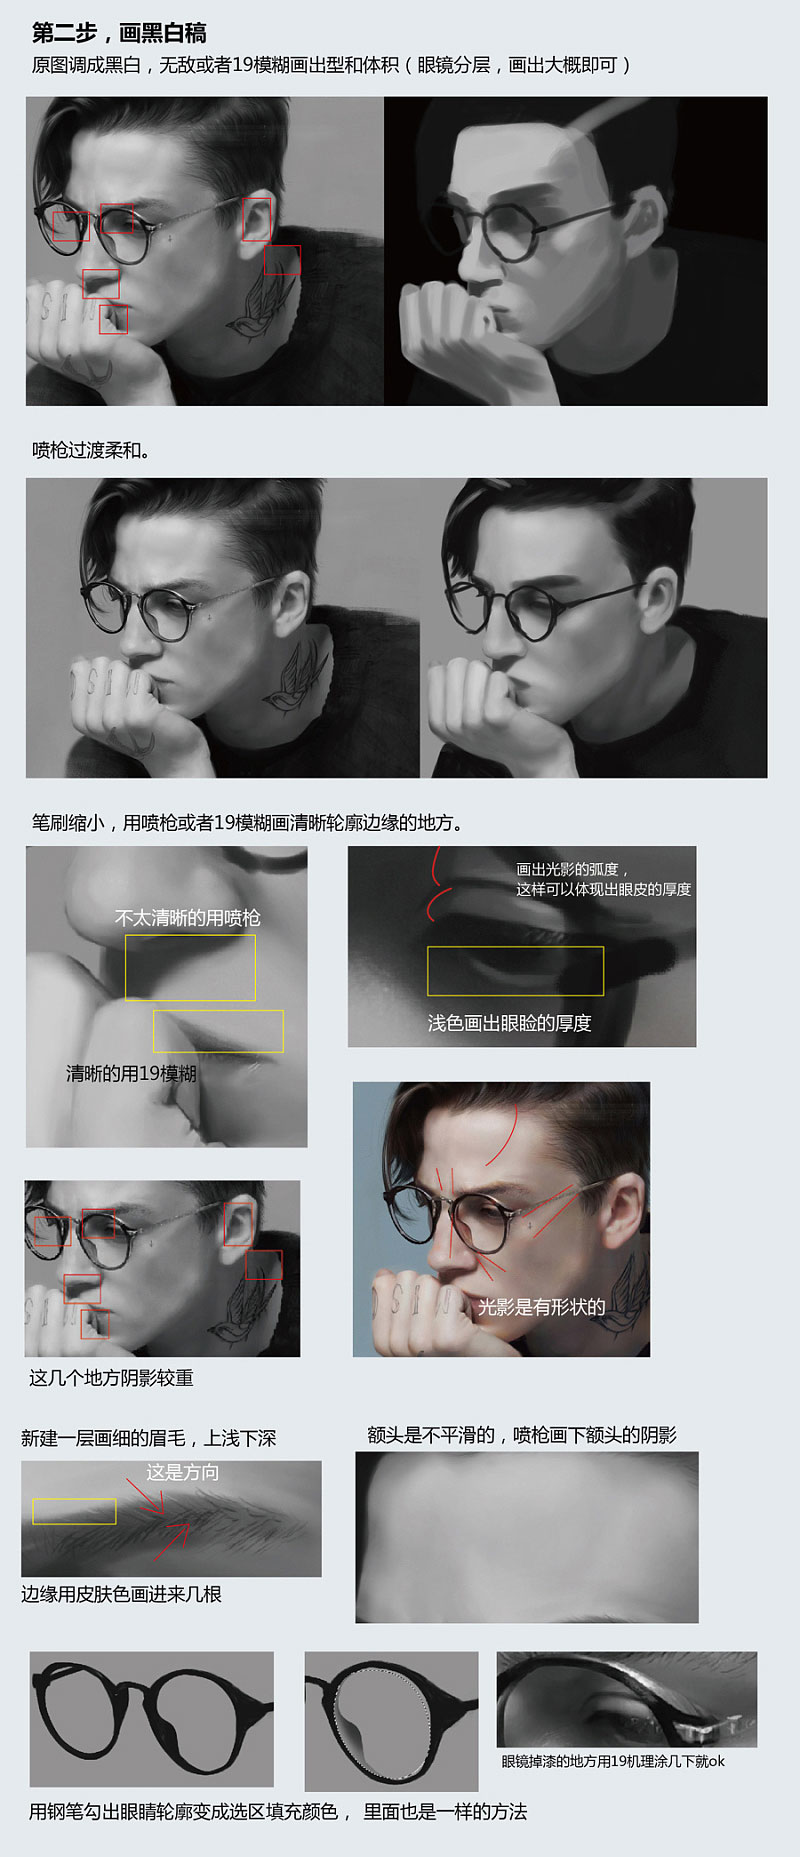 Photoshop人物手绘教程：学习绘制戴眼镜的帅哥人物素材图。